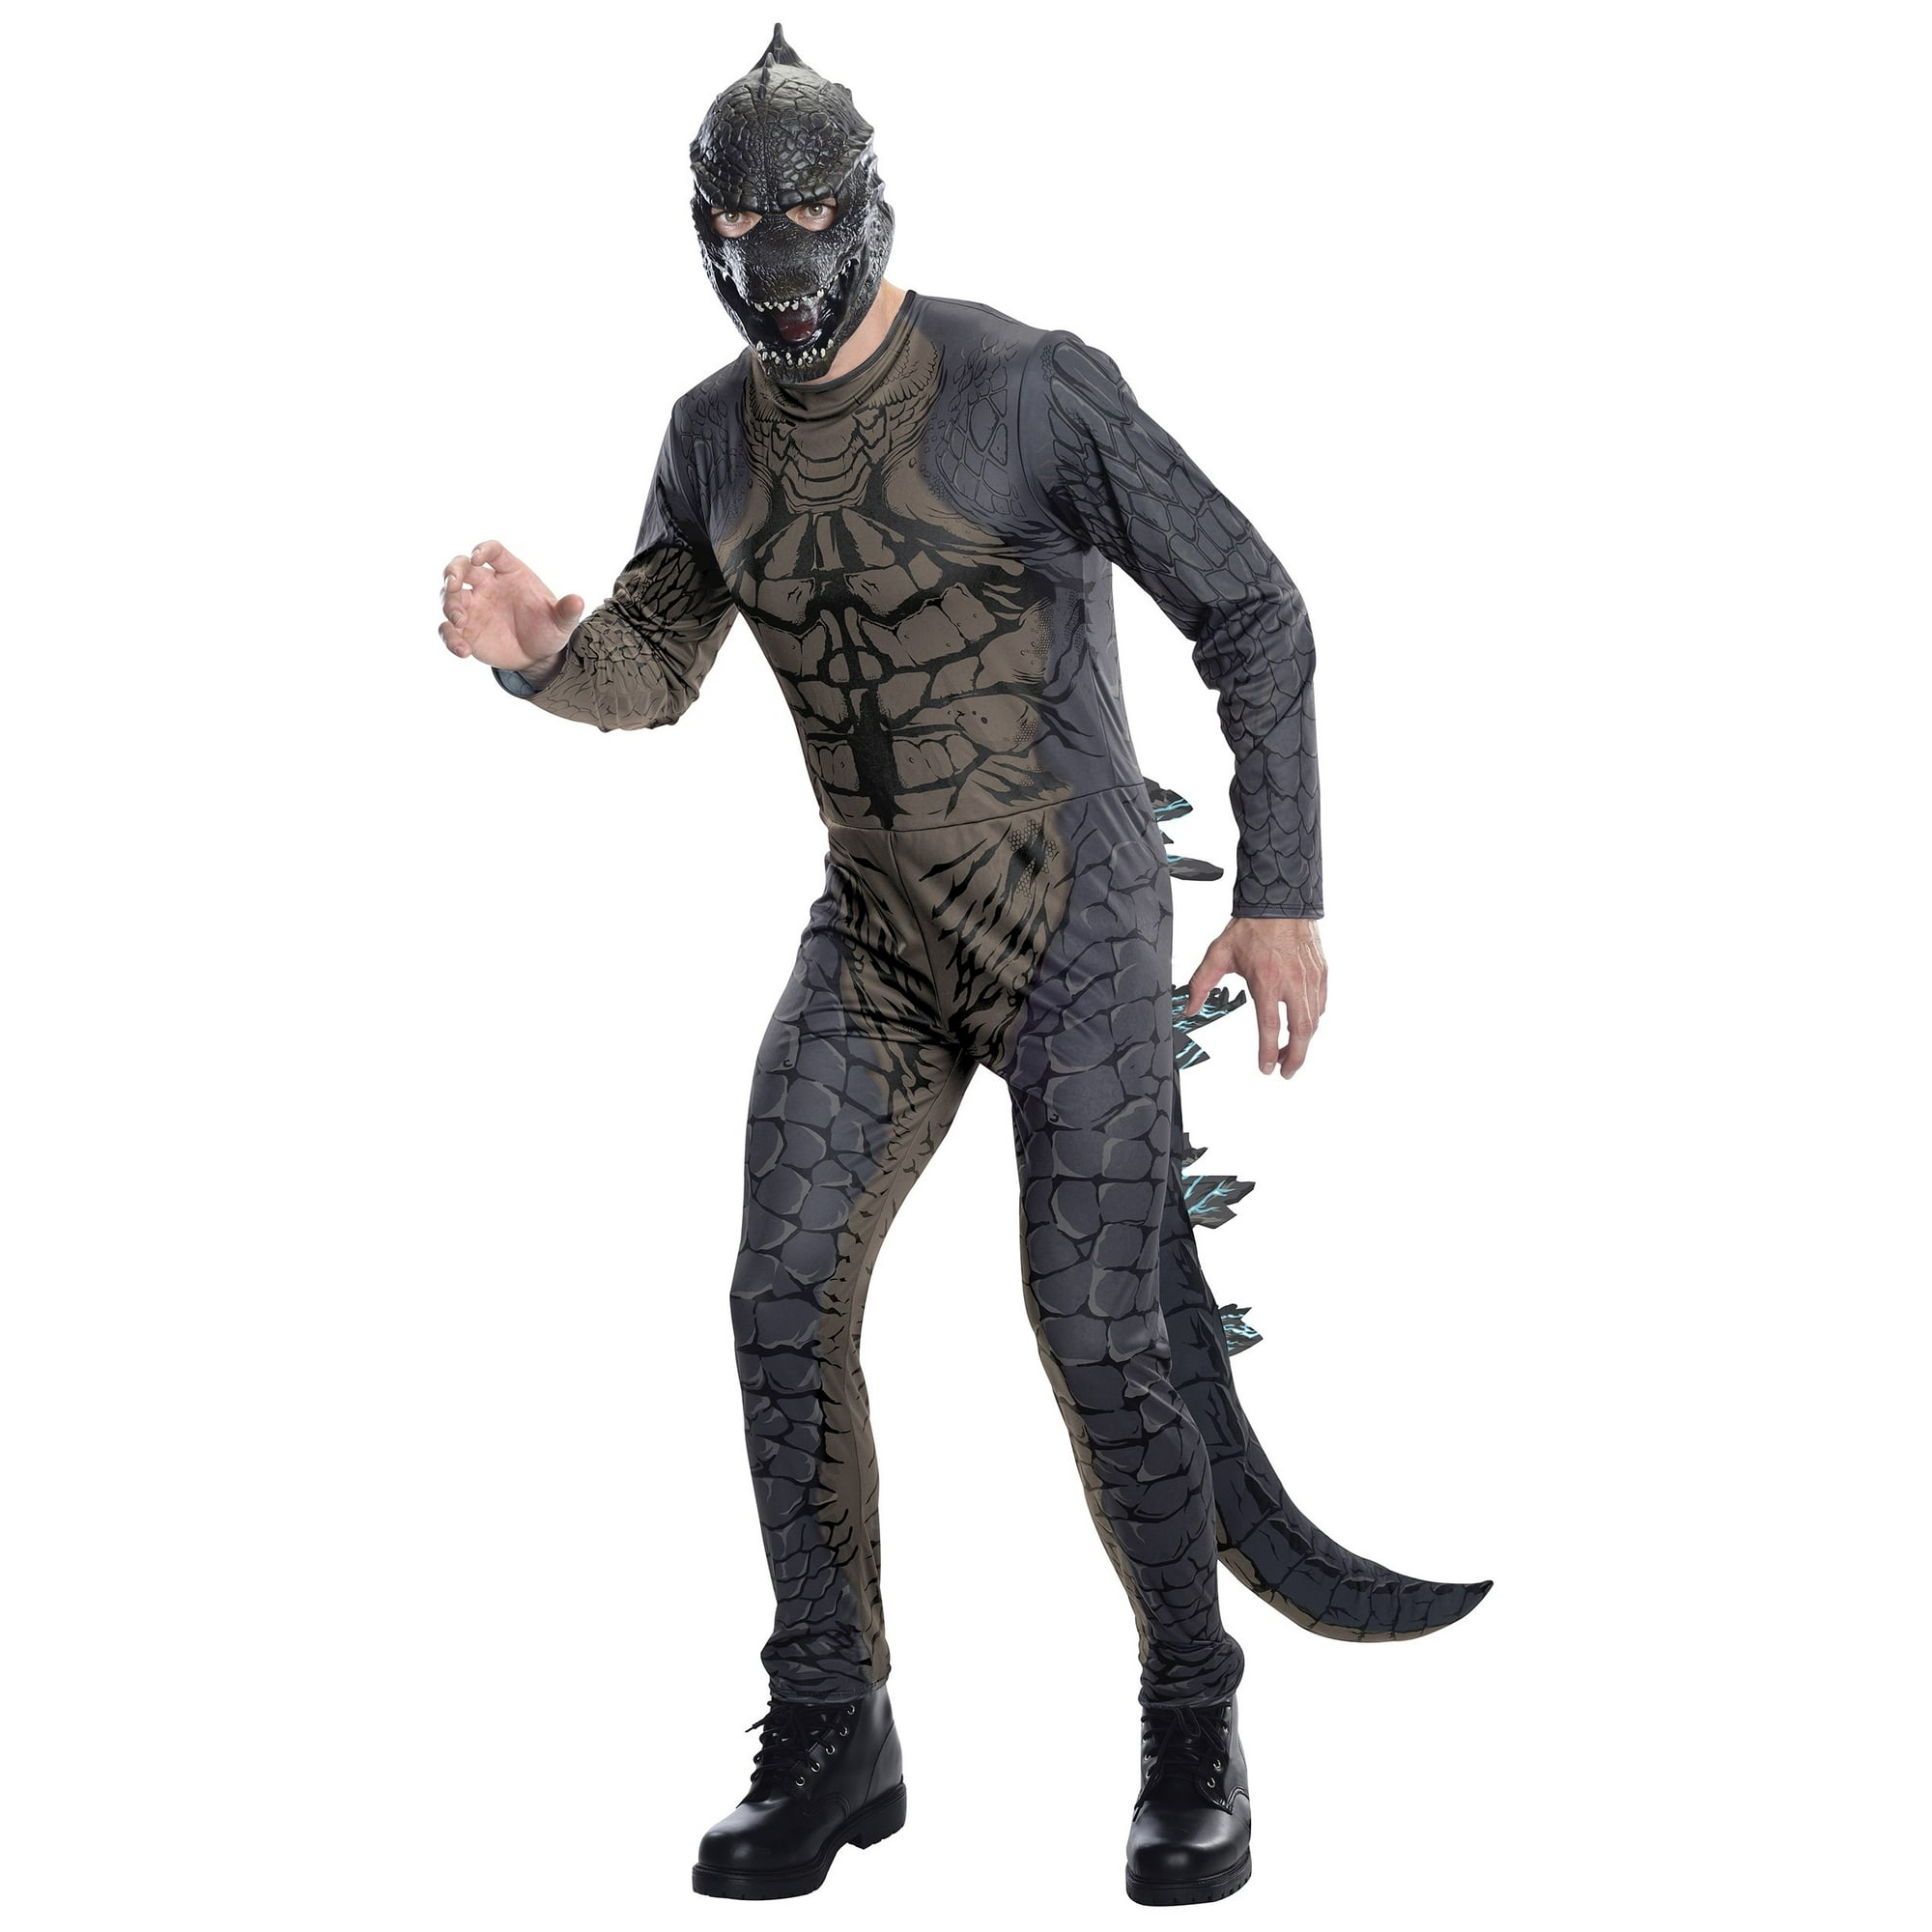 Sexy Godzilla Costume